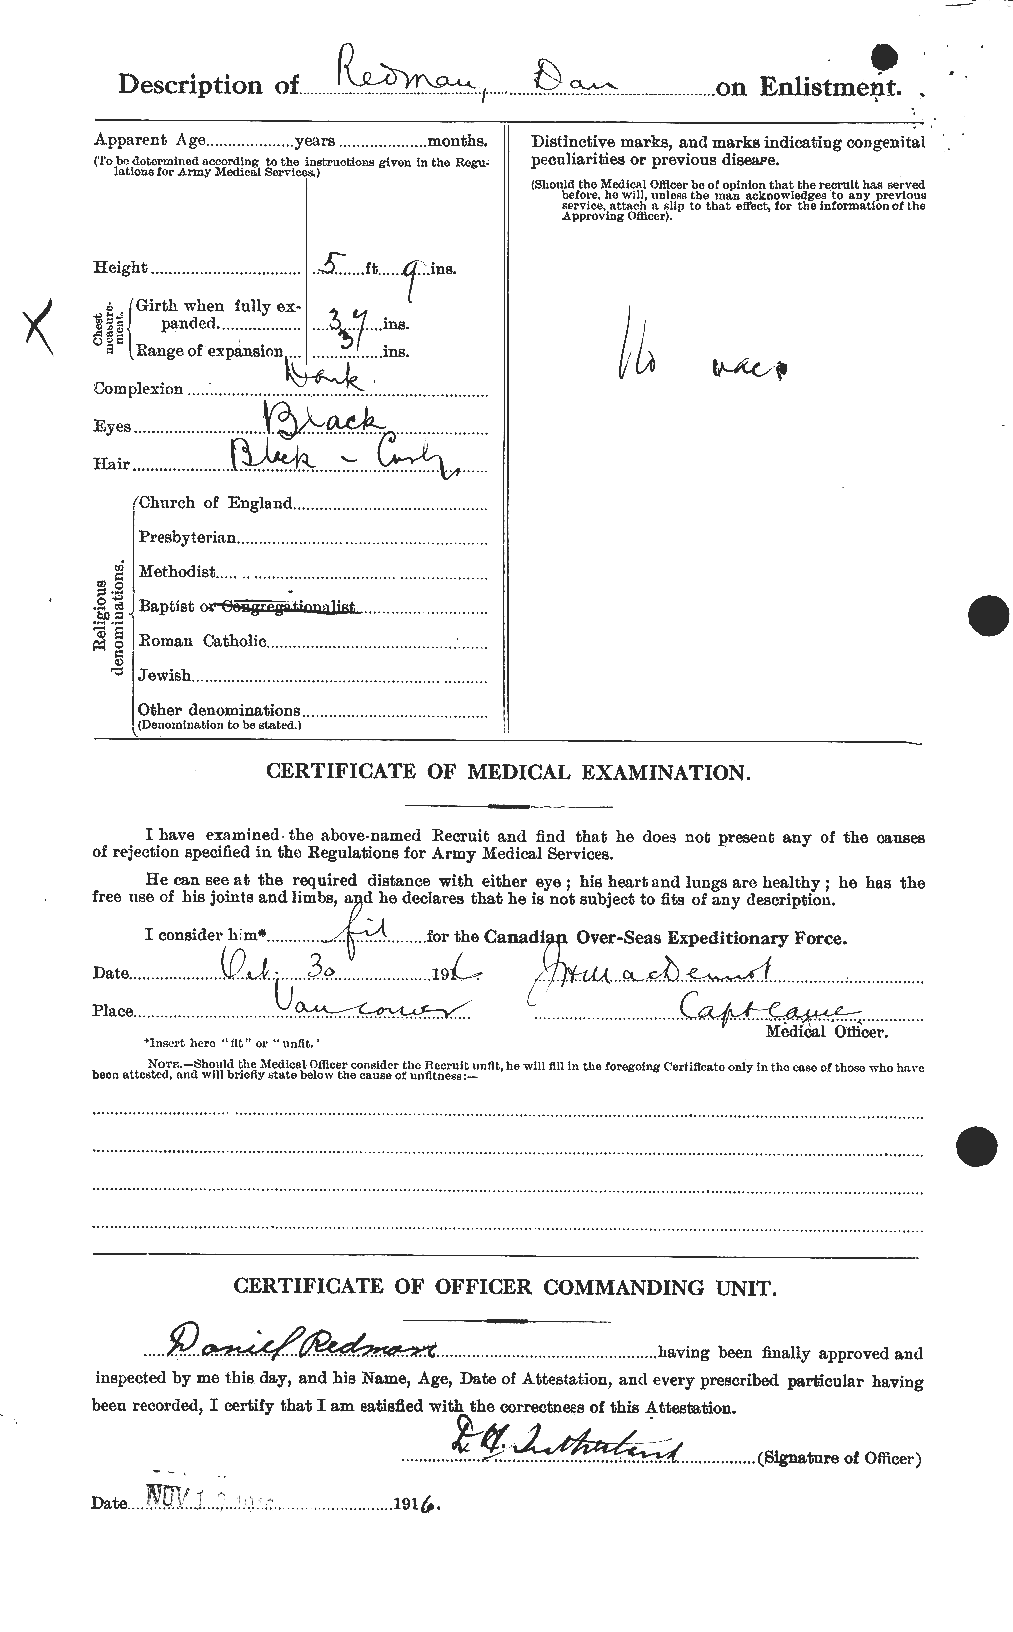 Dossiers du Personnel de la Première Guerre mondiale - CEC 596026b